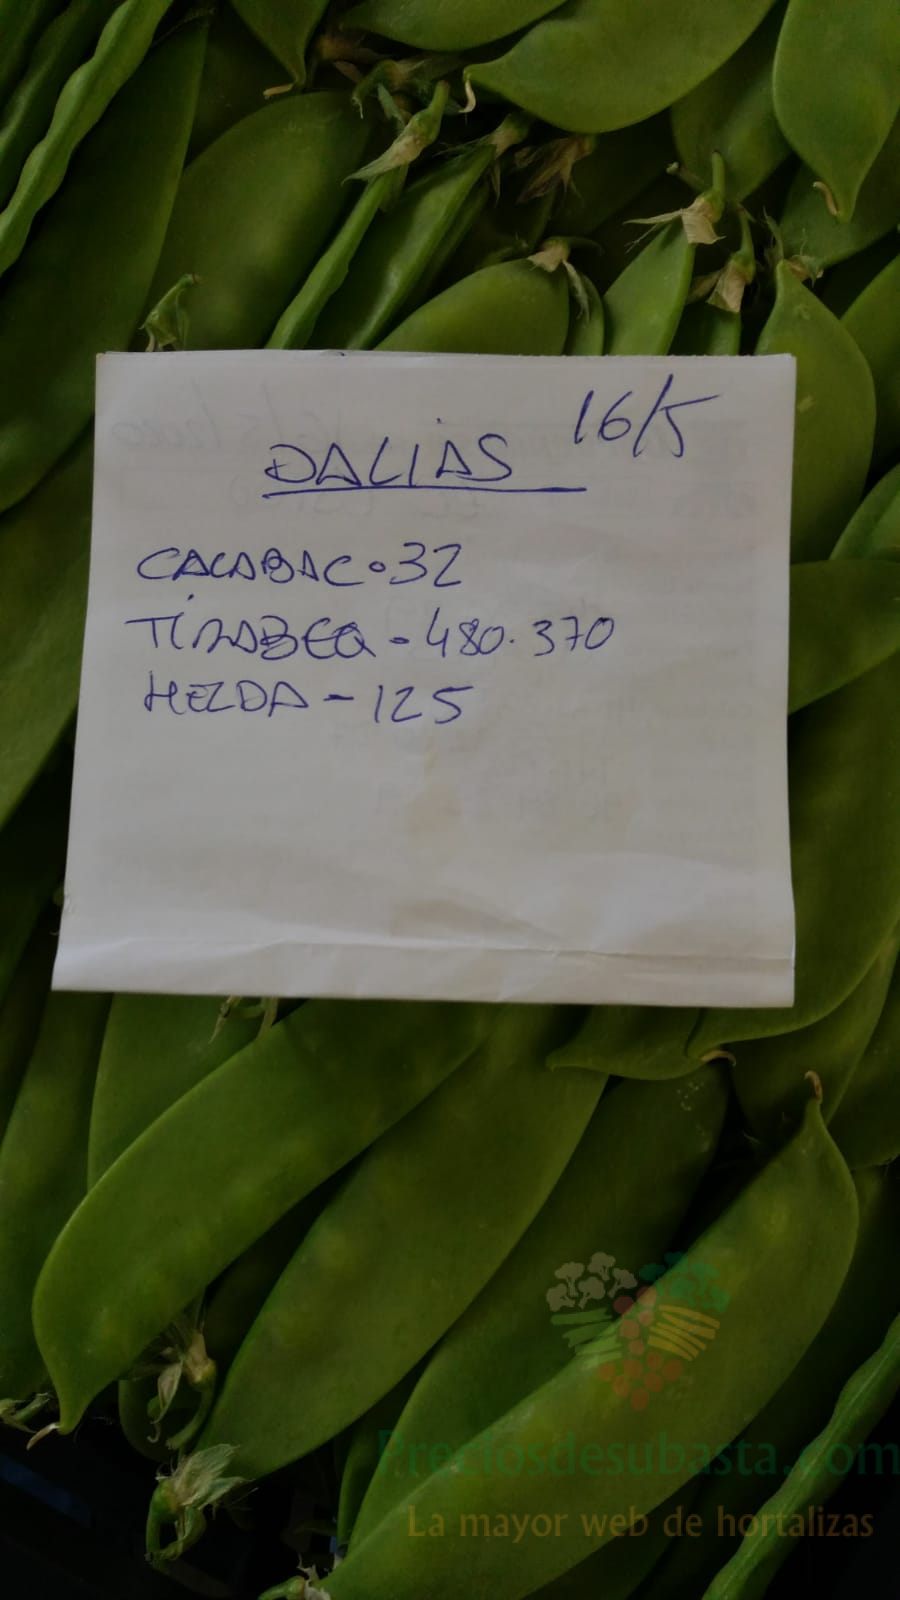 Subasta hortofrutícola AgroEjido Dalias 16 de mayo 2020